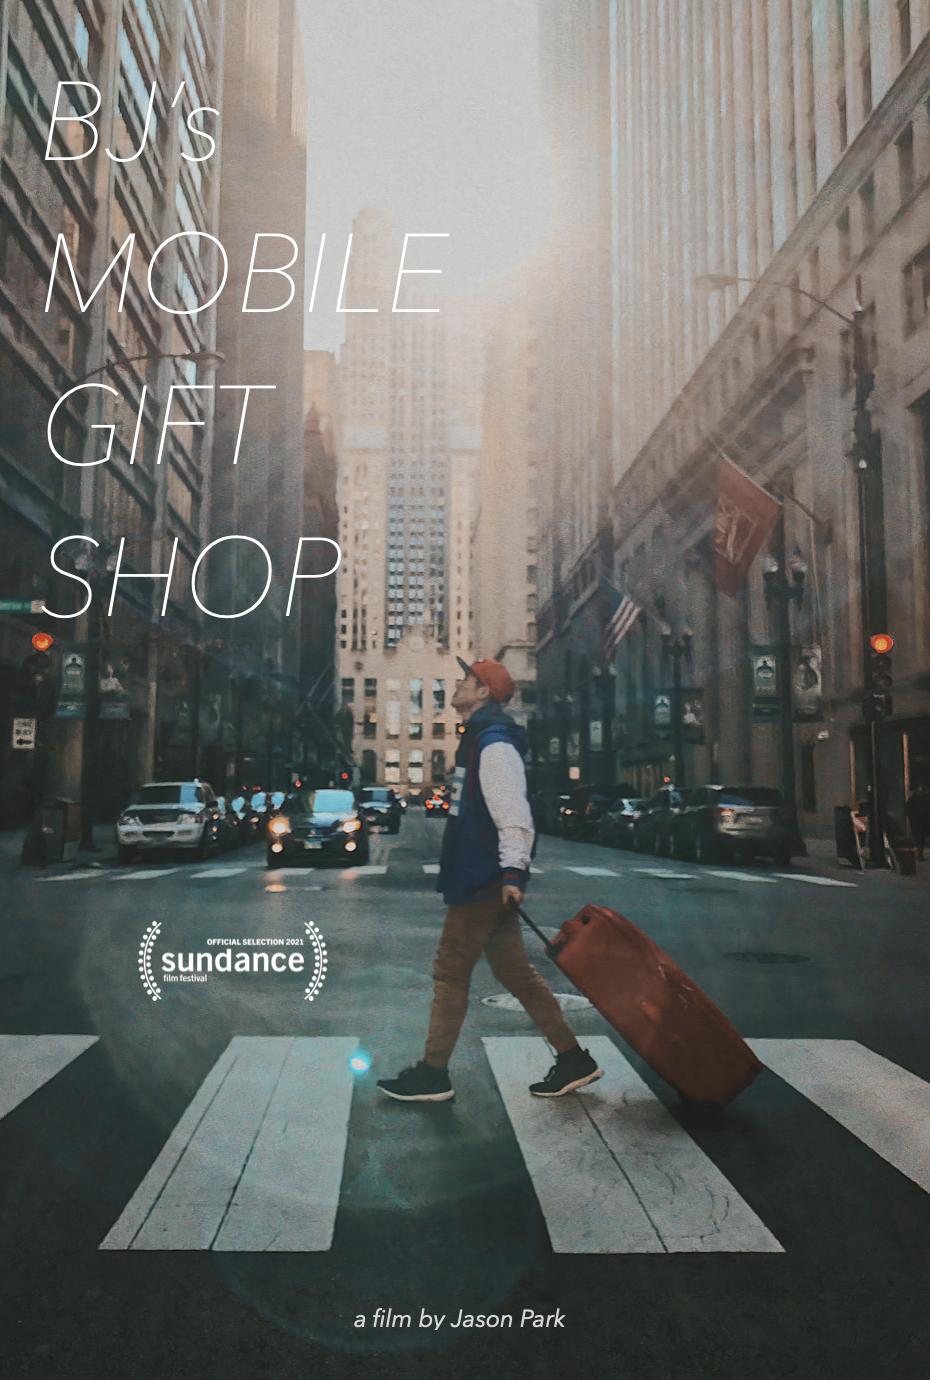 BJ's Mobile Gift Shop (2021) постер